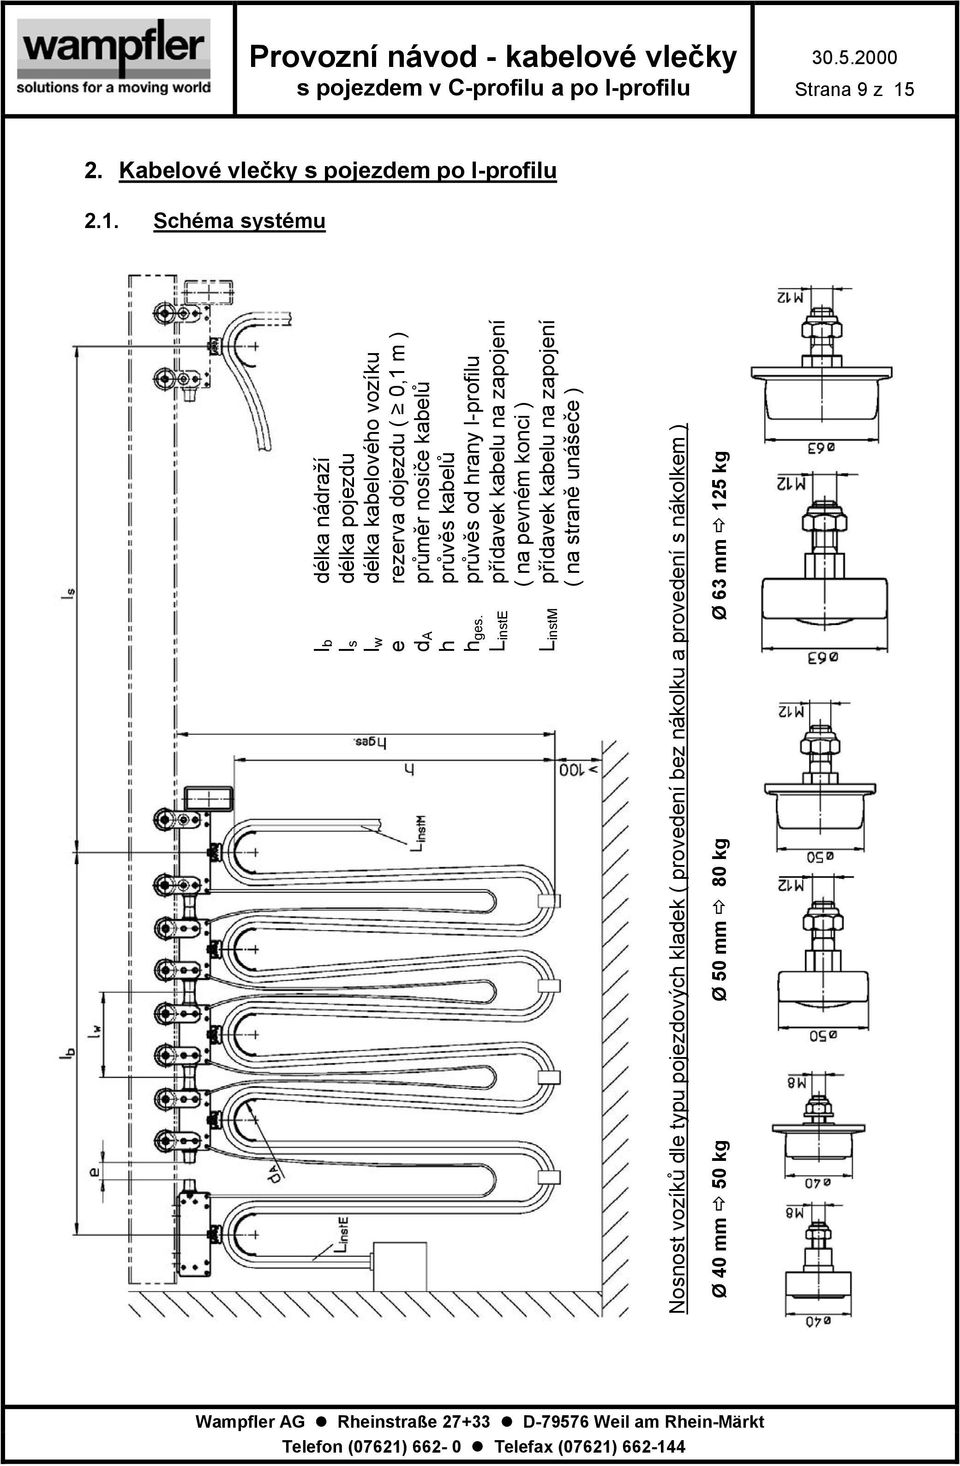 Schéma systému lb délka nádraží ls délka pojezdu lw délka kabelového vozíku e rezerva dojezdu ( 0,1 m ) da průměr nosiče